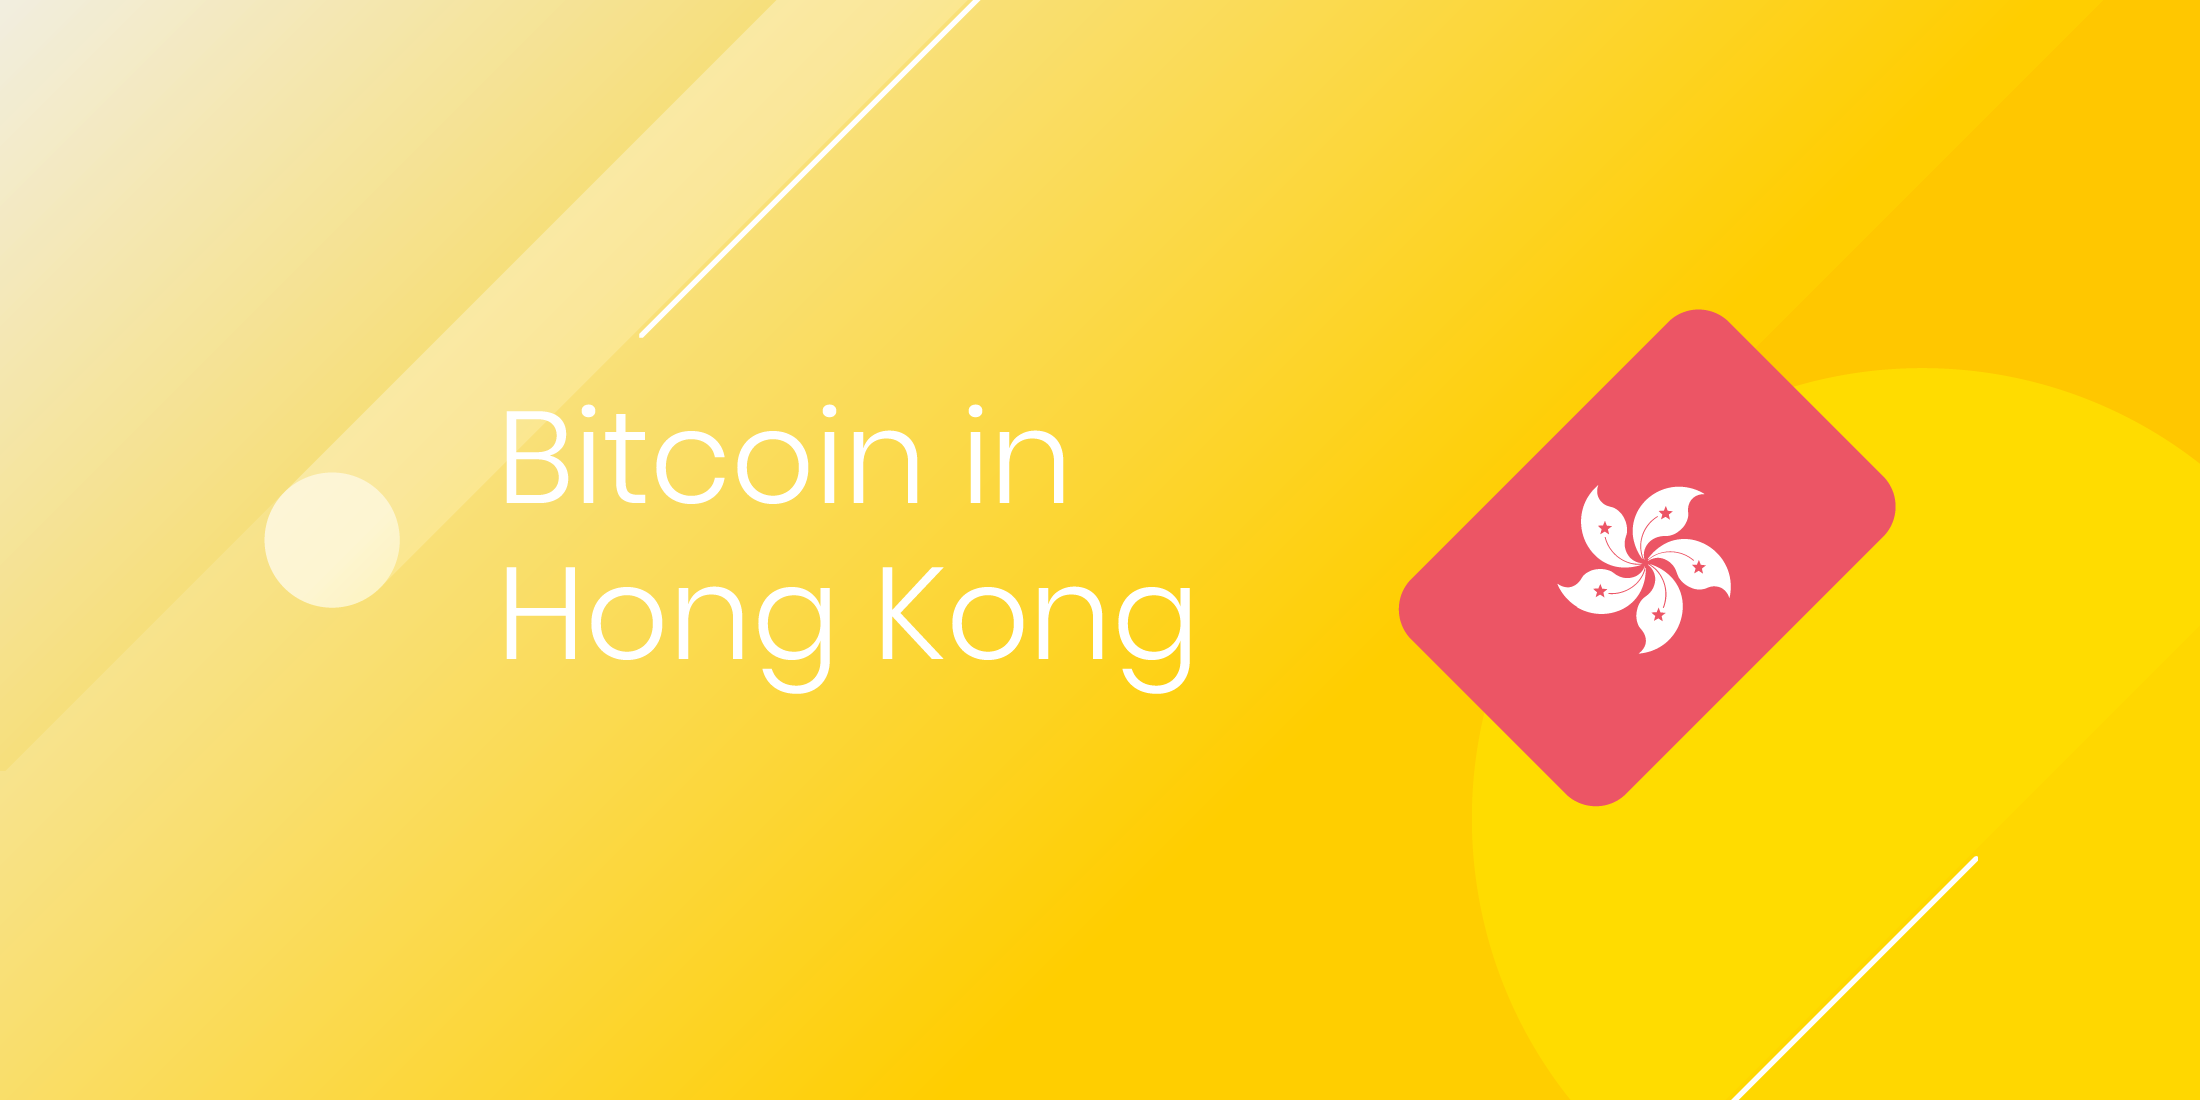 Buy bitcoin hongkong bitcoin cash blockchain search